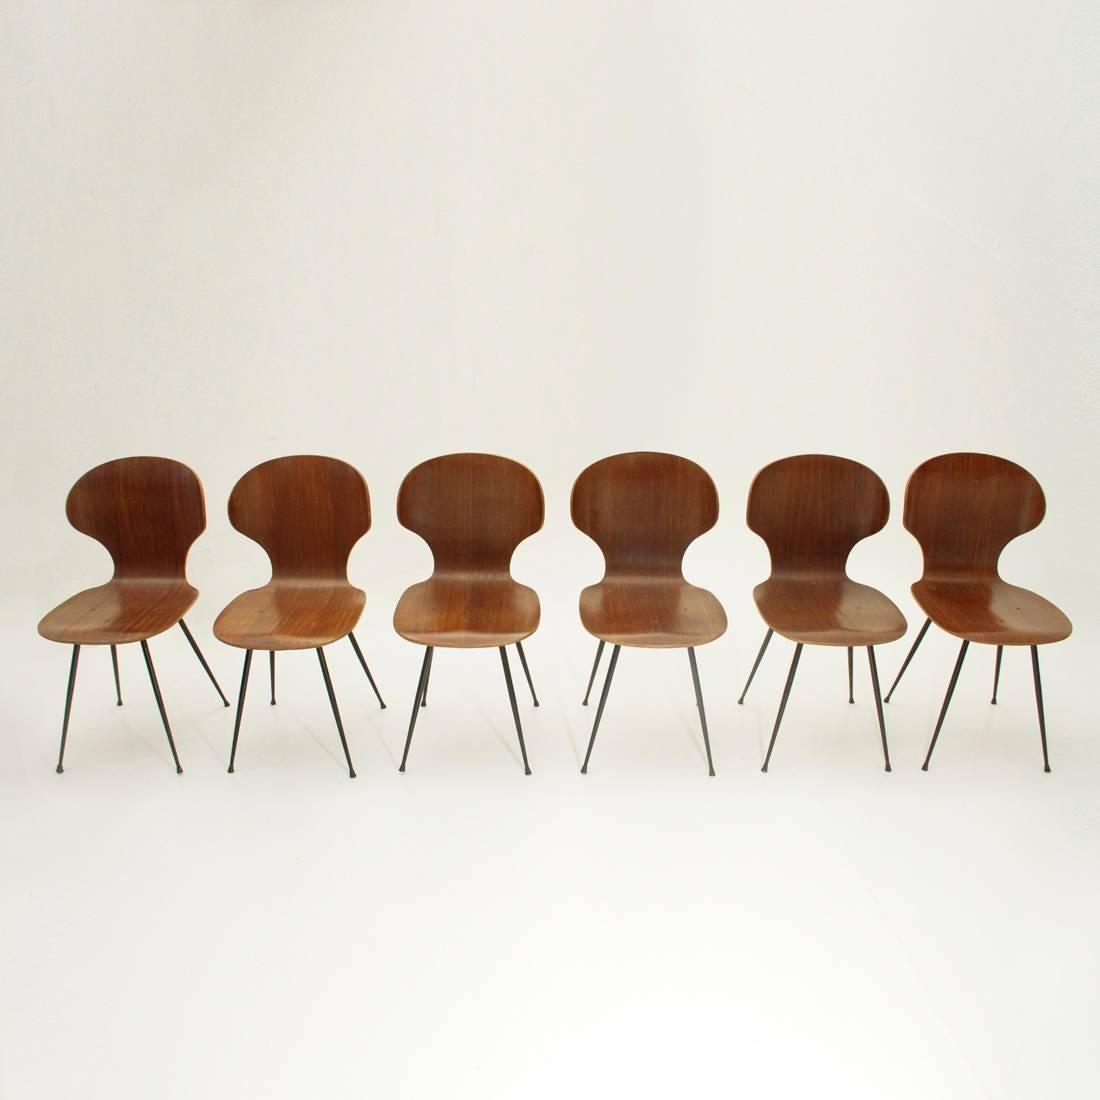 Sei sedie prodotte da Industria Legni Curvi negli anni '50 su progetto di Carlo Ratti.
Struttura in metallo verniciato nero,
Scocca in compensato curvato a caldo.
Buone condizioni generali, alcuni segni dovuti al normale utilizzo nel tempo,